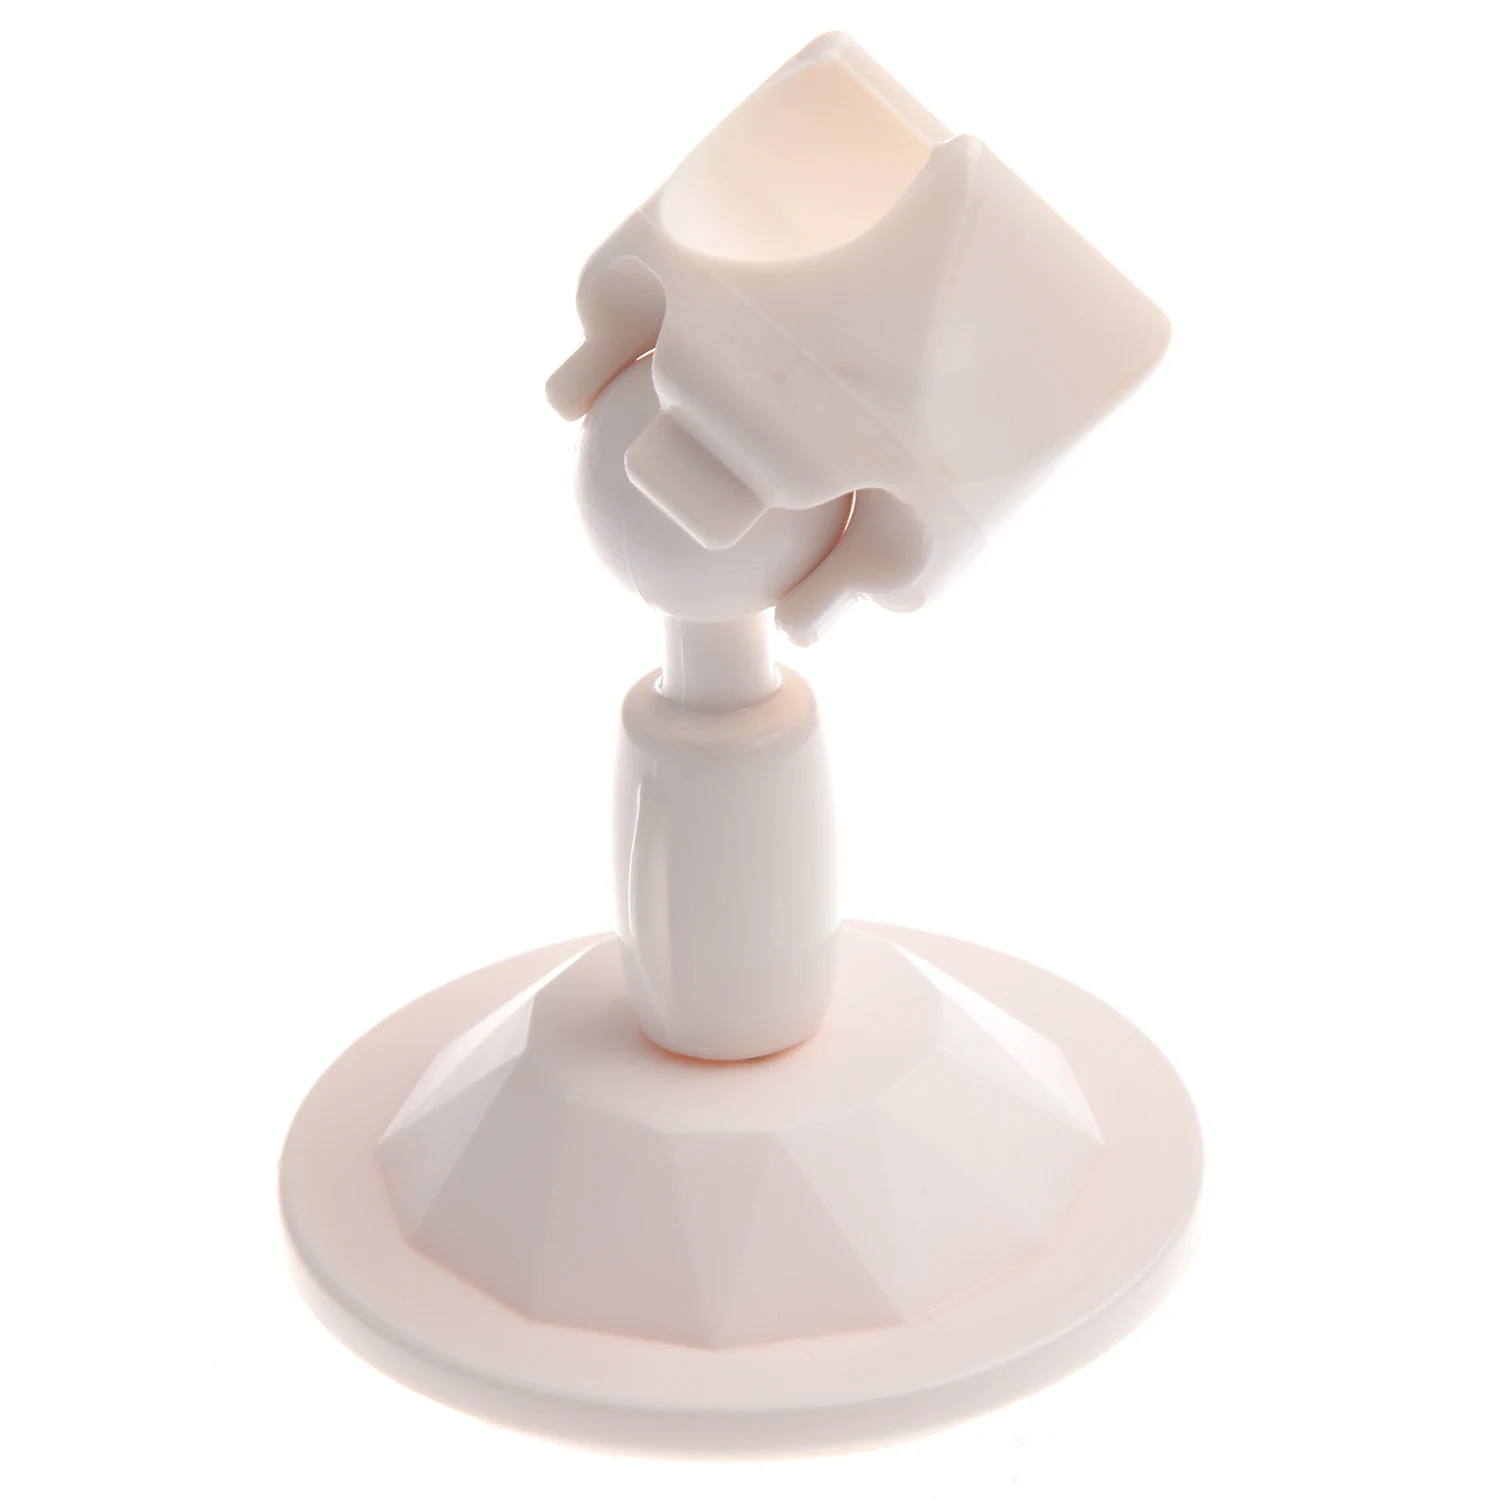 Белый настенный прикрепляемый держатель душевой головки Ванная комната Вакуумная присоска